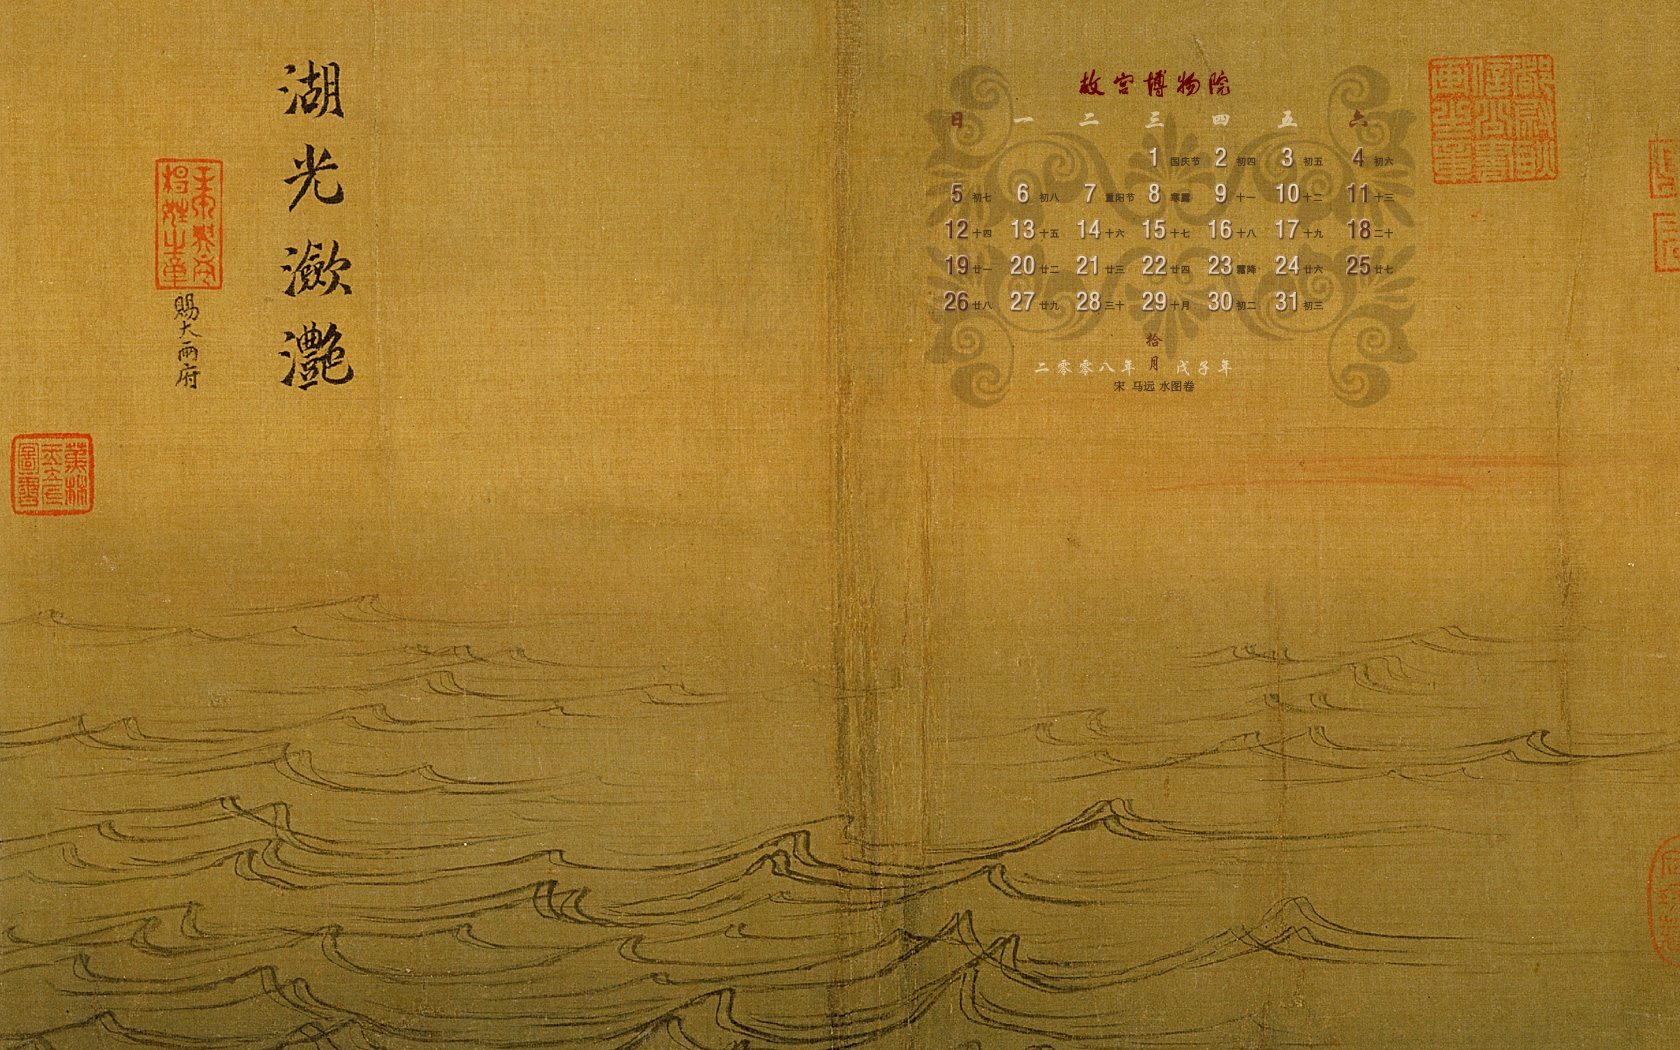 北京故宫博物院 文物展壁纸(二)18 - 1680x1050